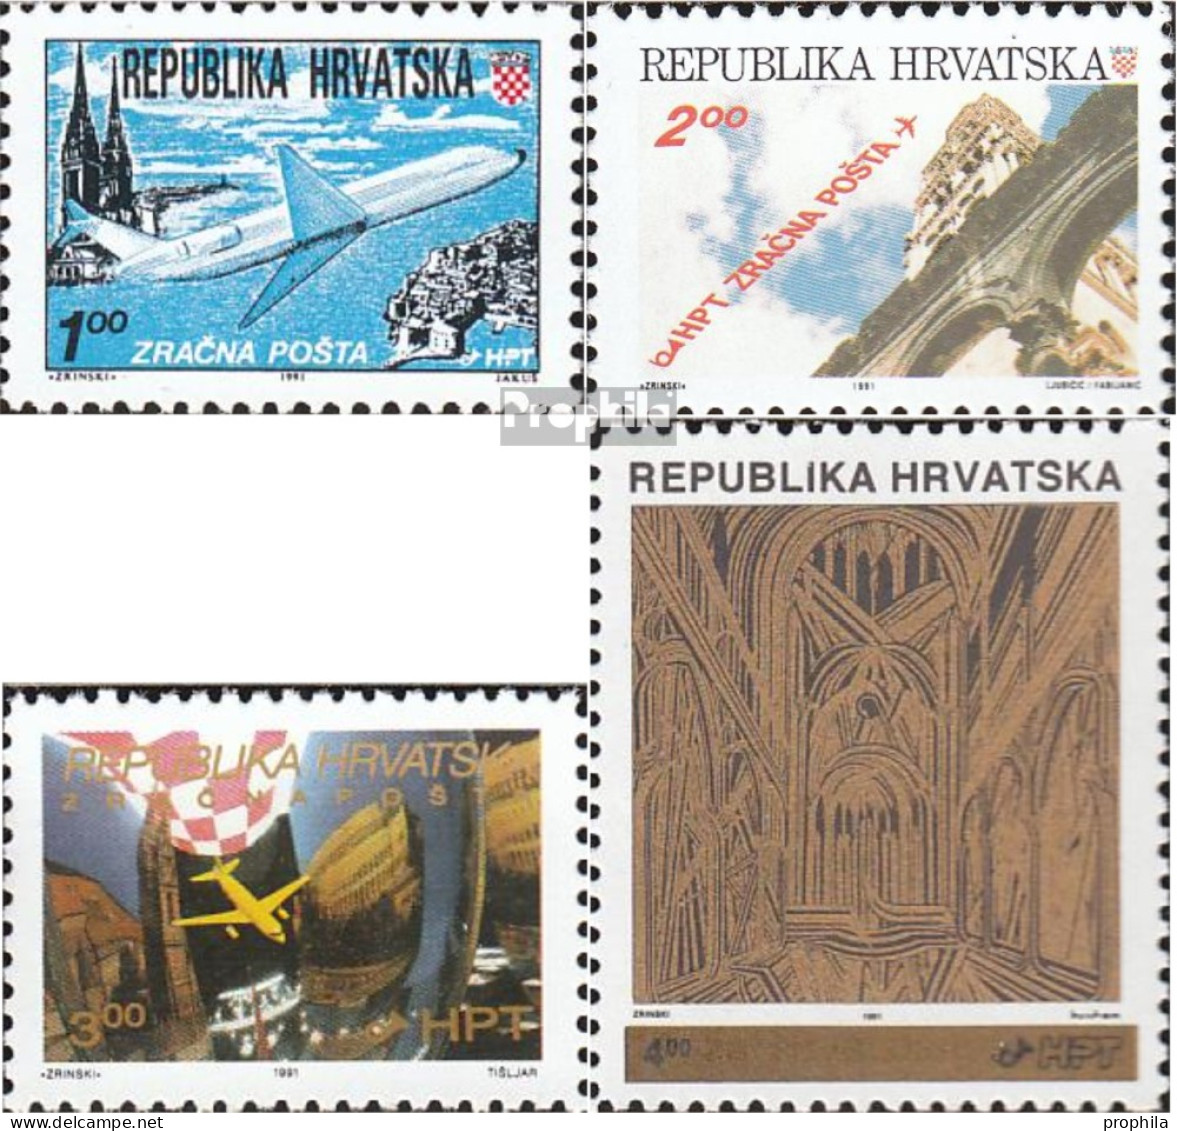 Kroatien 179A,180A A,181,182A (kompl.Ausg.) Postfrisch 1991 Flugpost, Aufdruckausgabe - Kroatien